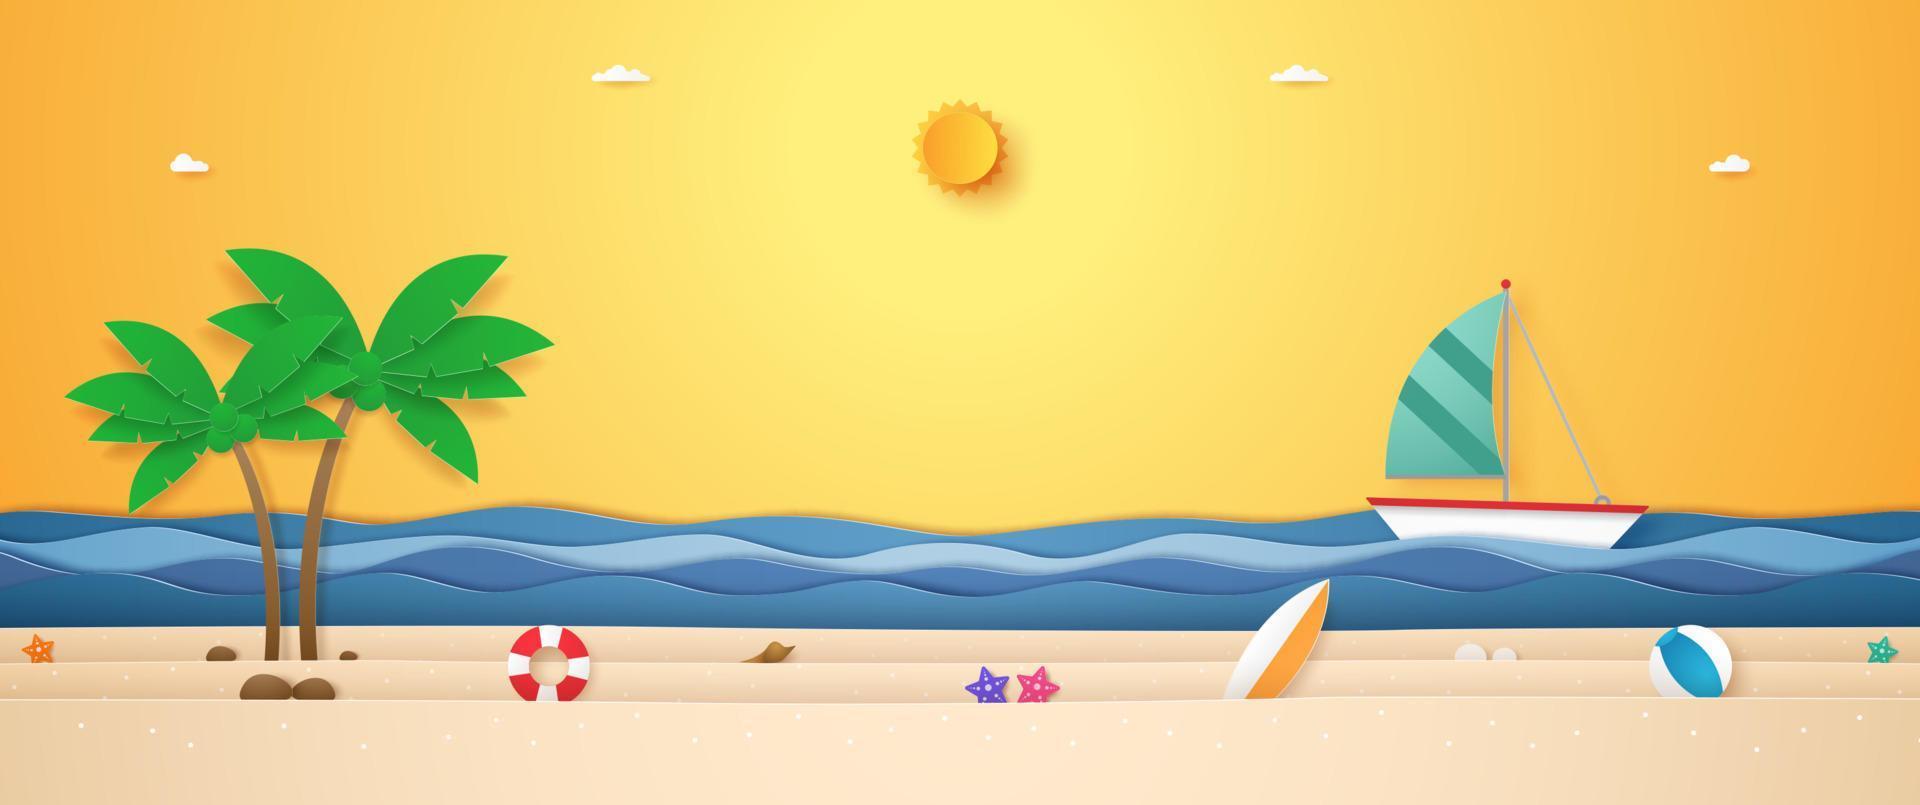 landschap van boot zeilen op golvende zee, zomer spullen en kokospalm op strand met felle zon in zonneschijn hemel voor de zomer in papier kunststijl vector